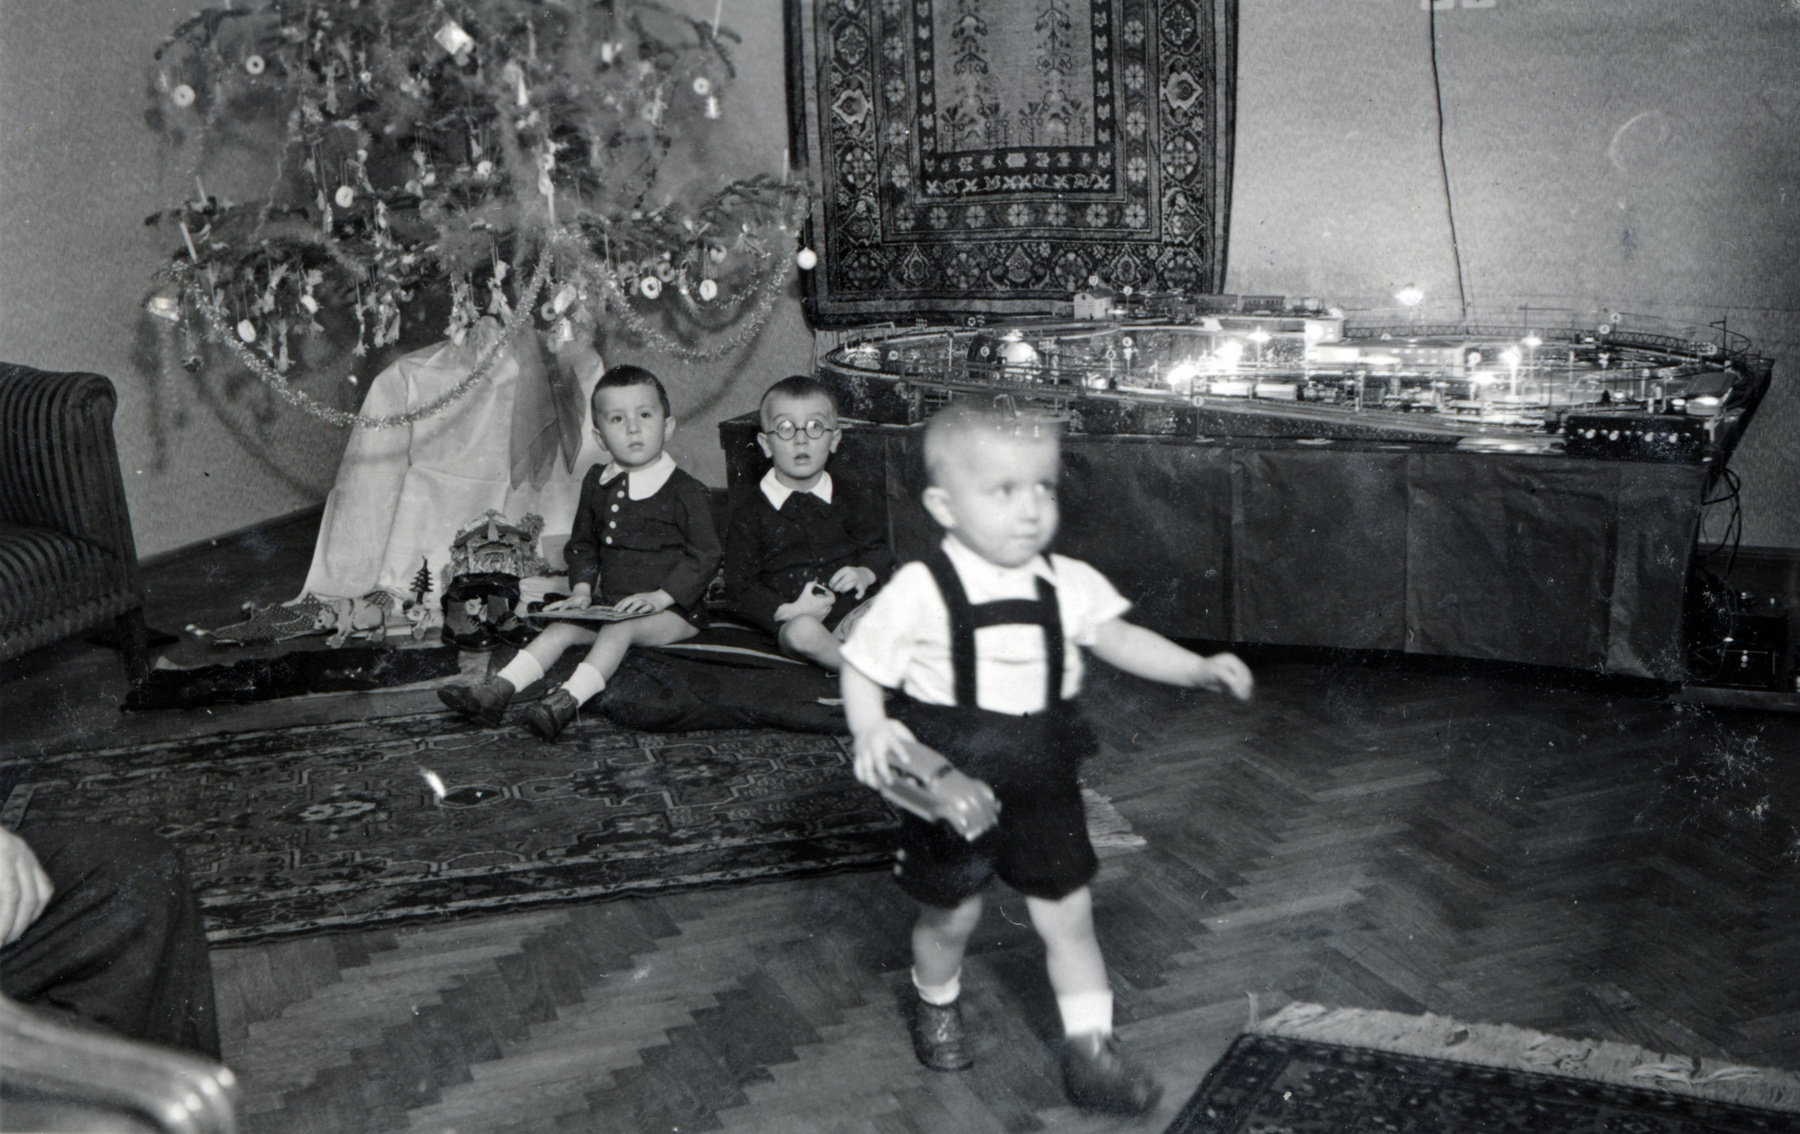 A húszas évek bája lengi be a karácsonyt ezen az 1928-as fotón